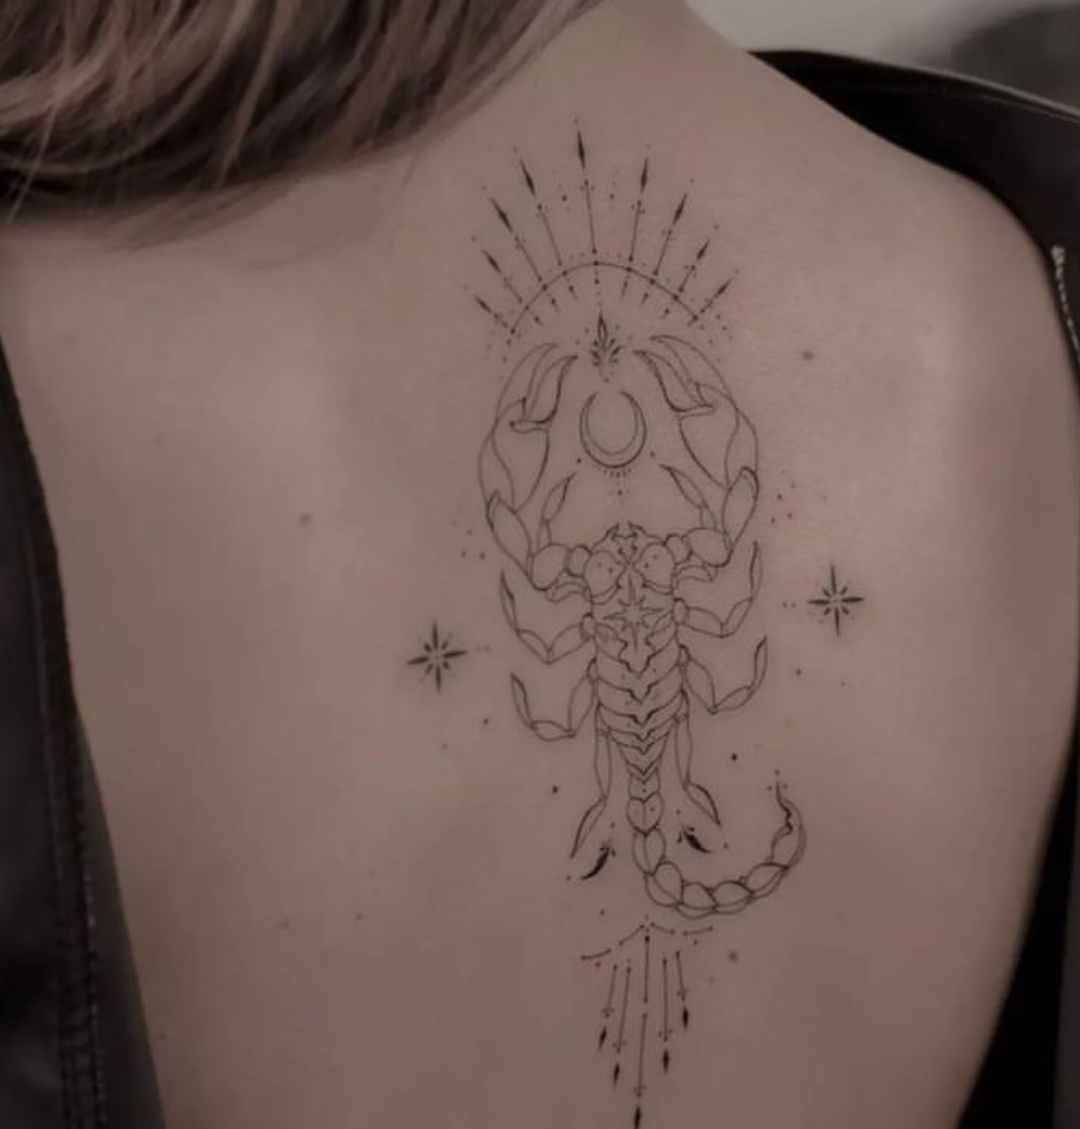 Scorpio Tattoos | Ideas for Scorpio Tattoo Designs